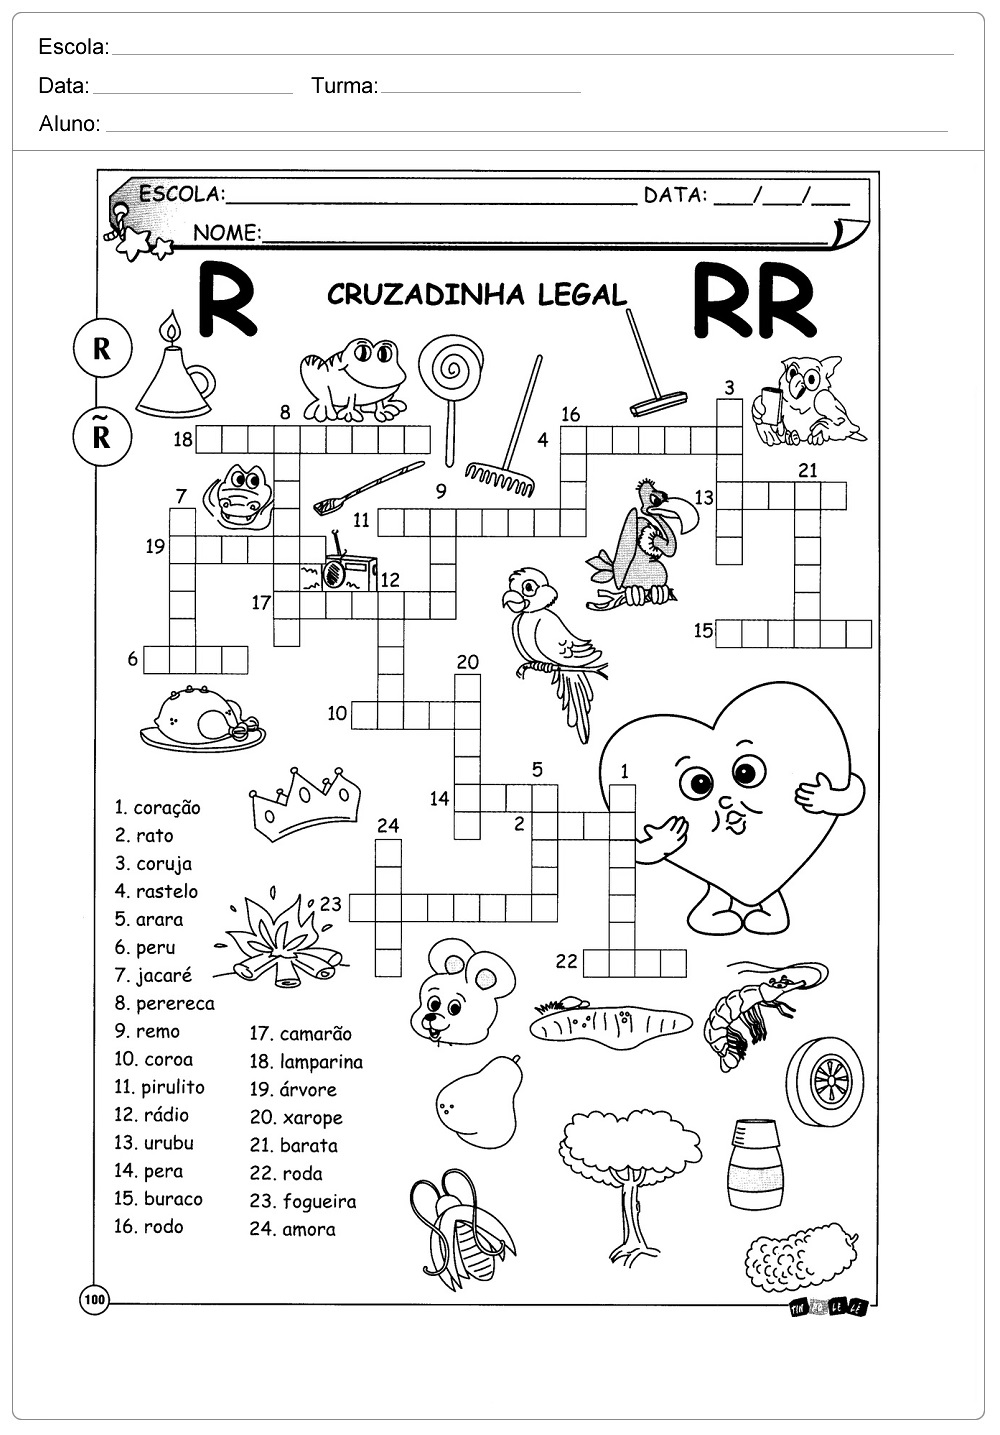 Complete as palavras com R ou RR